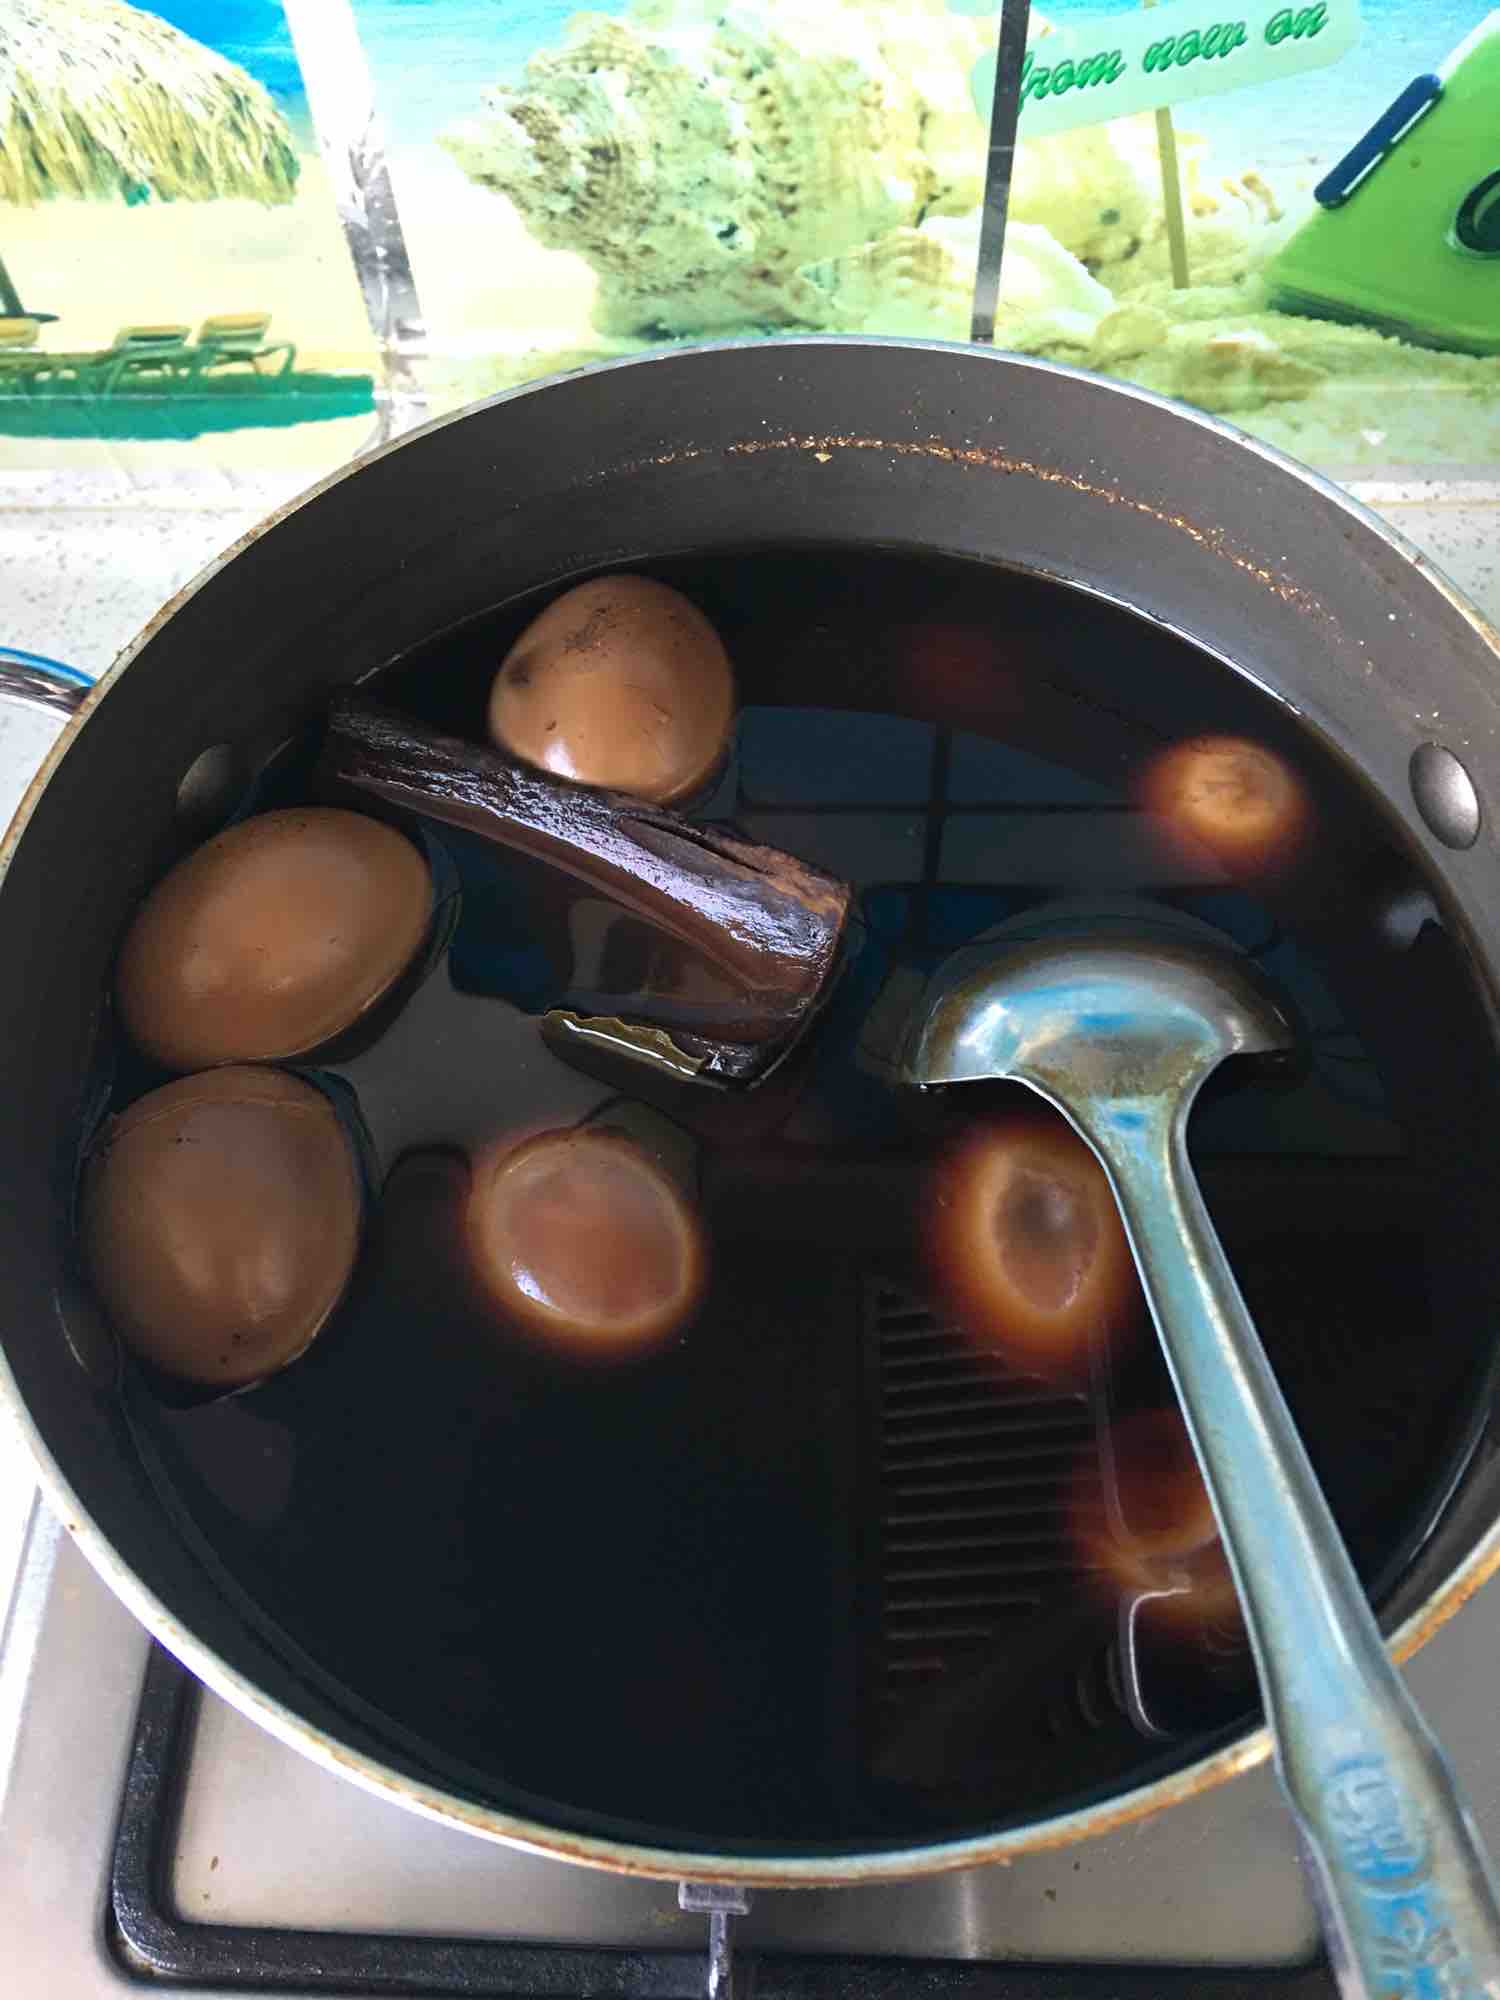 茶叶蛋制作方法